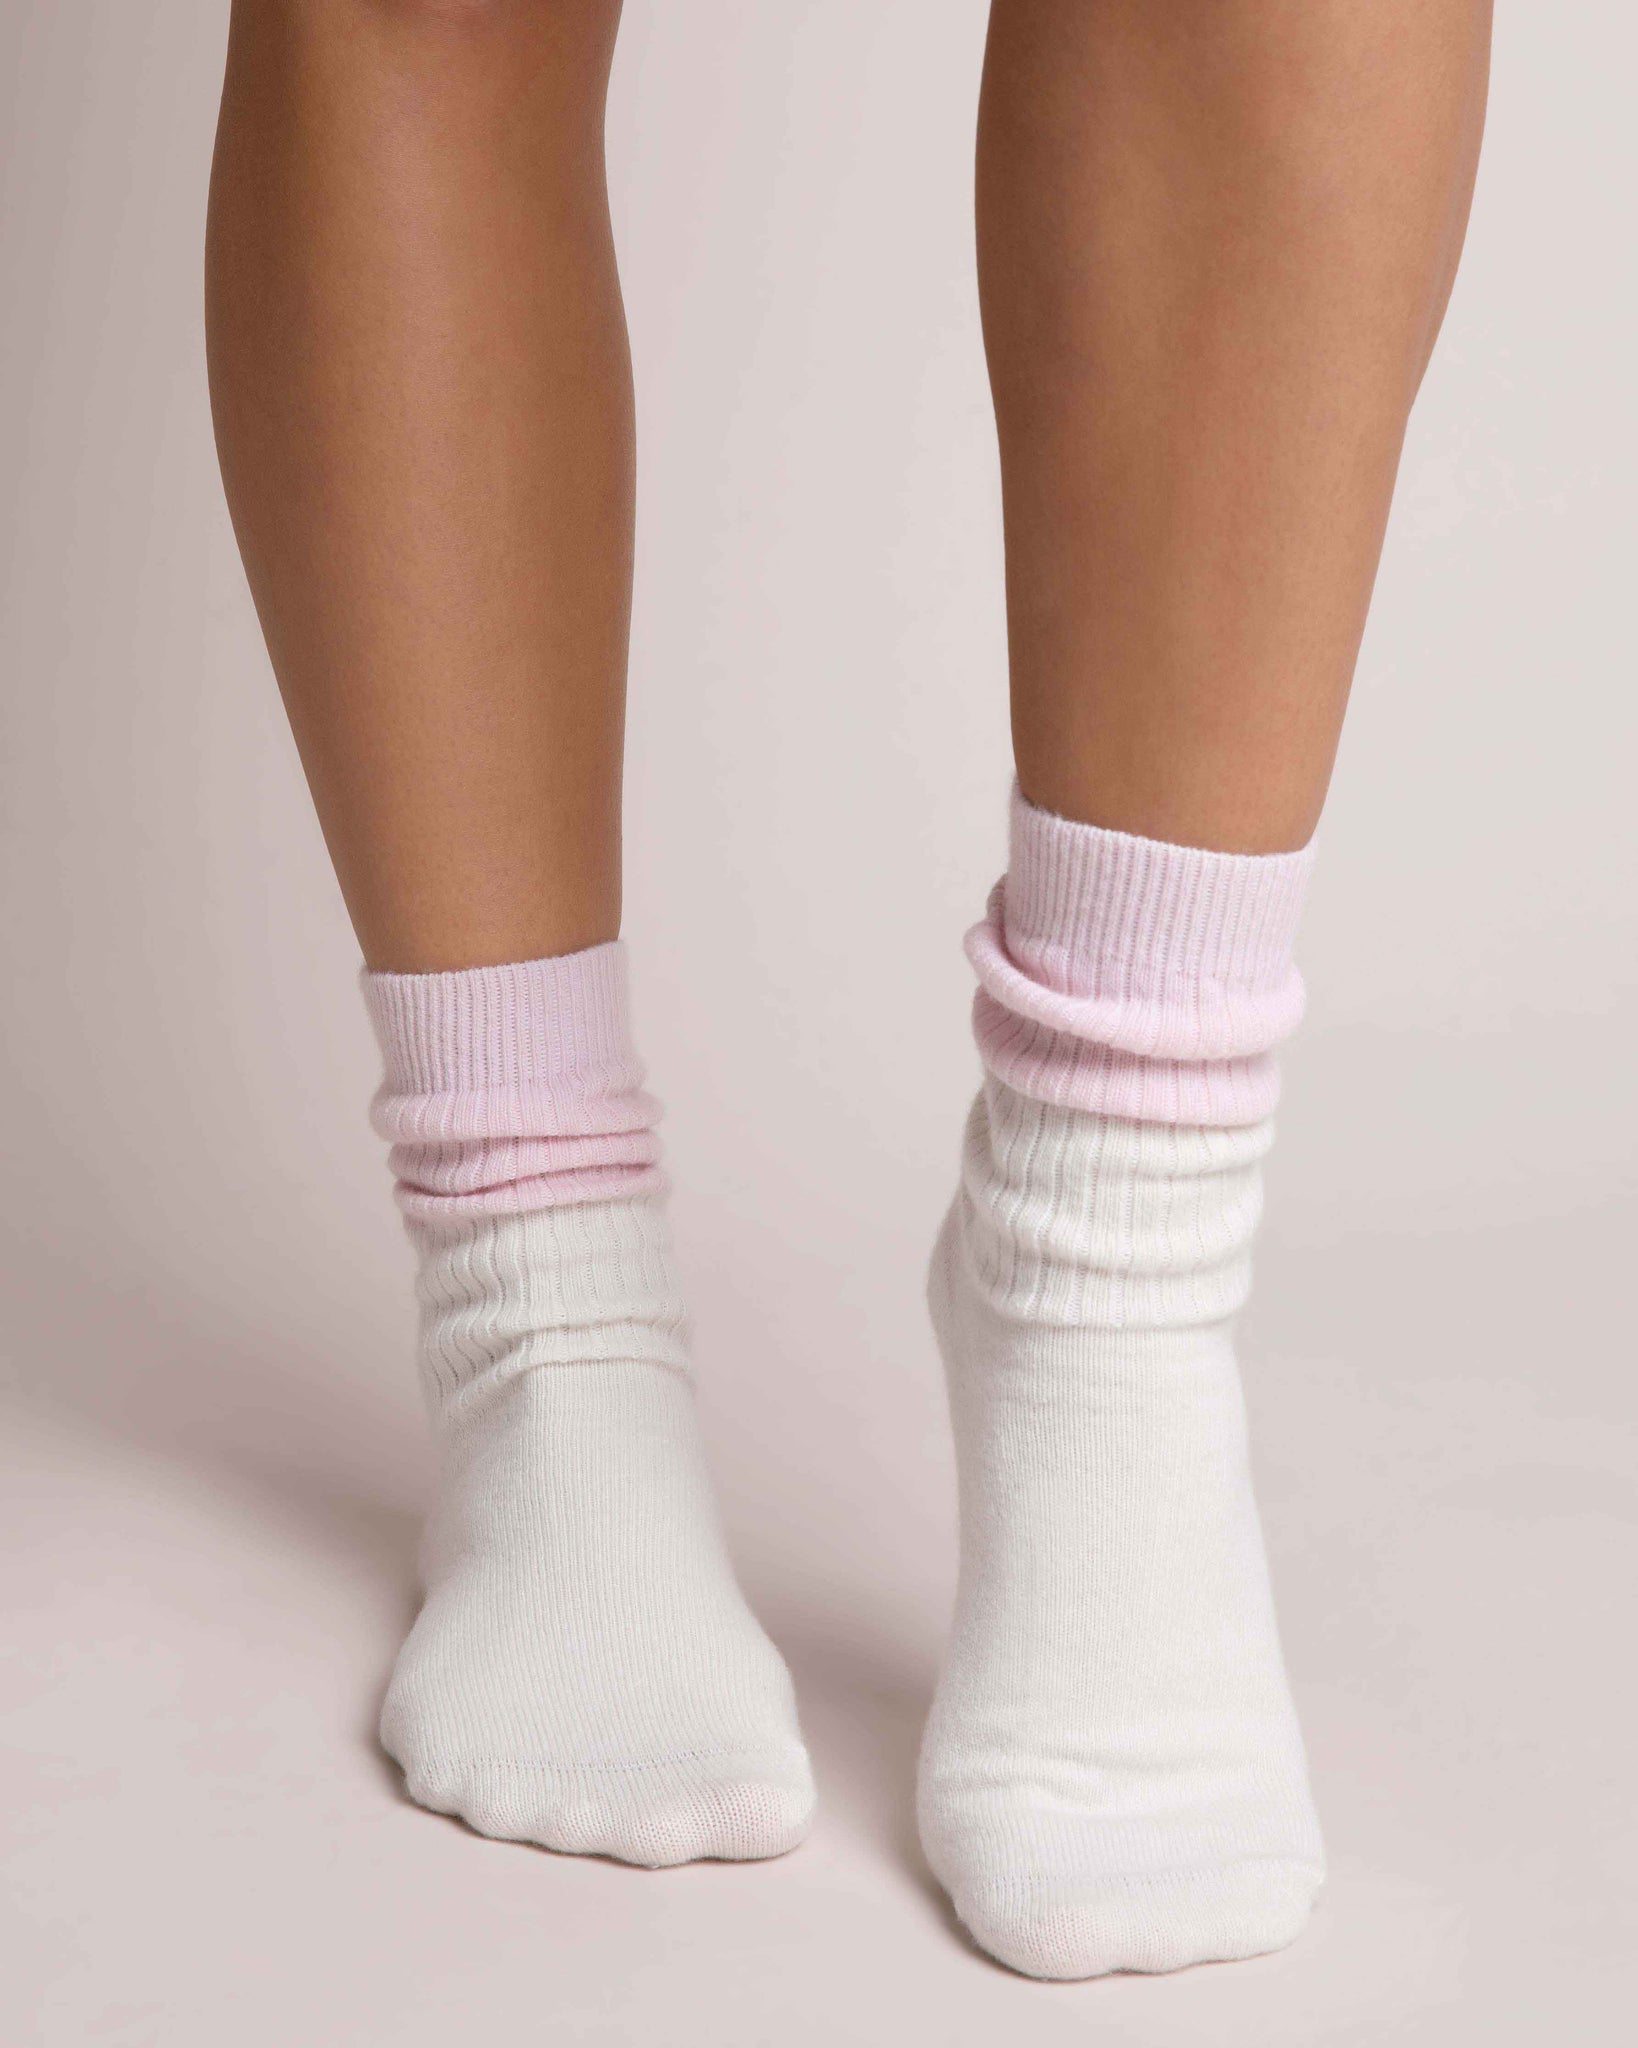 Sleep Socks | Cream and Pink Sleep Socks Yawn 